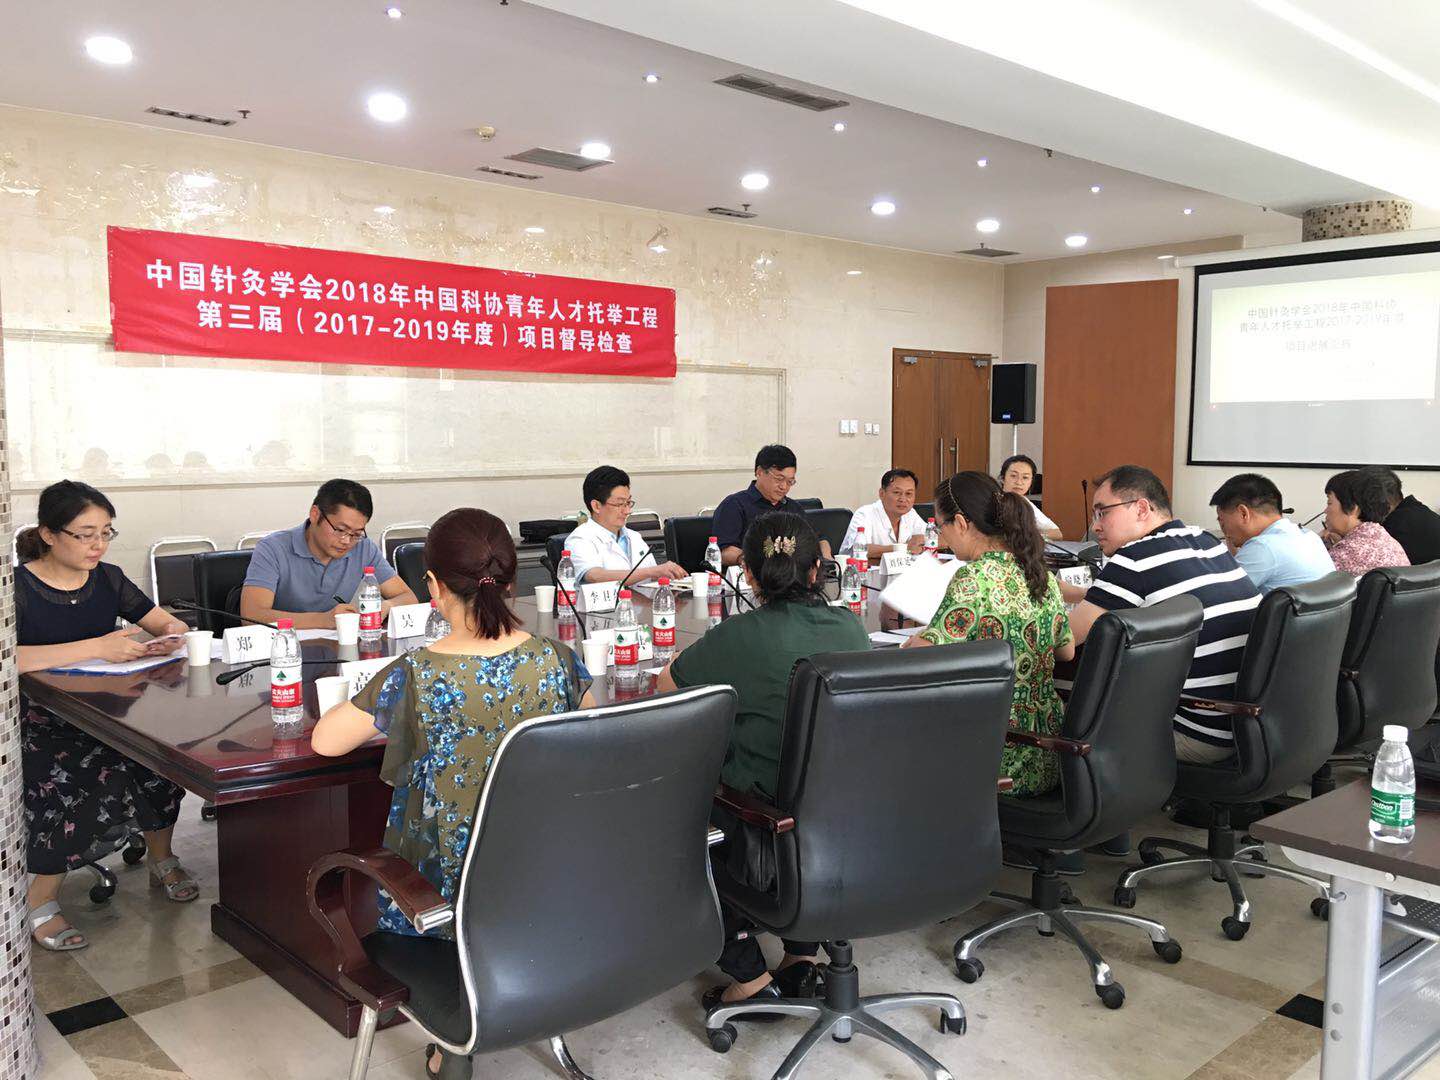 中国针灸学会开展2018年中国科协青年人才托举工程第三届（2017-2019年度）项目督导检查工作1.jpg